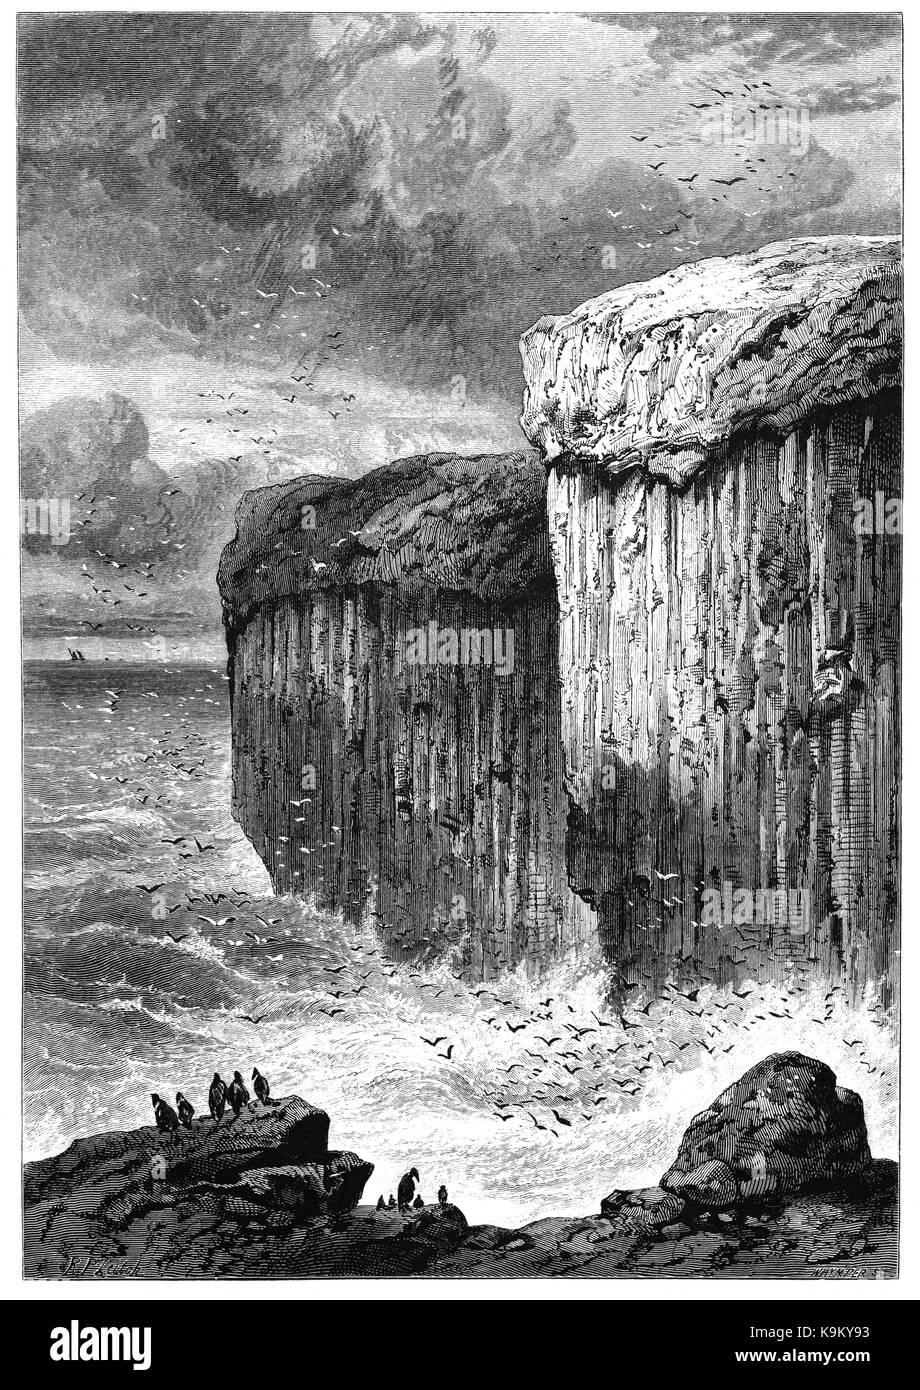 1870: Fingal's Cave è una grotta marina sull'isola disabitata di staffa, nelle Ebridi Interne della Scozia, noto per la sua acustica naturale. La grotta è formata interamente da raccordare esagonale colonne di basalto entro un Paleocene flusso lavico, simile nella struttura per il Selciato del gigante in Irlanda del Nord e quelle della vicina Ulva. Divenne noto come Fingal's Cave dopo l'eroe eponimo di un poema epico dal XVIII secolo poeta Scozzese-storico James Macpherson. Foto Stock